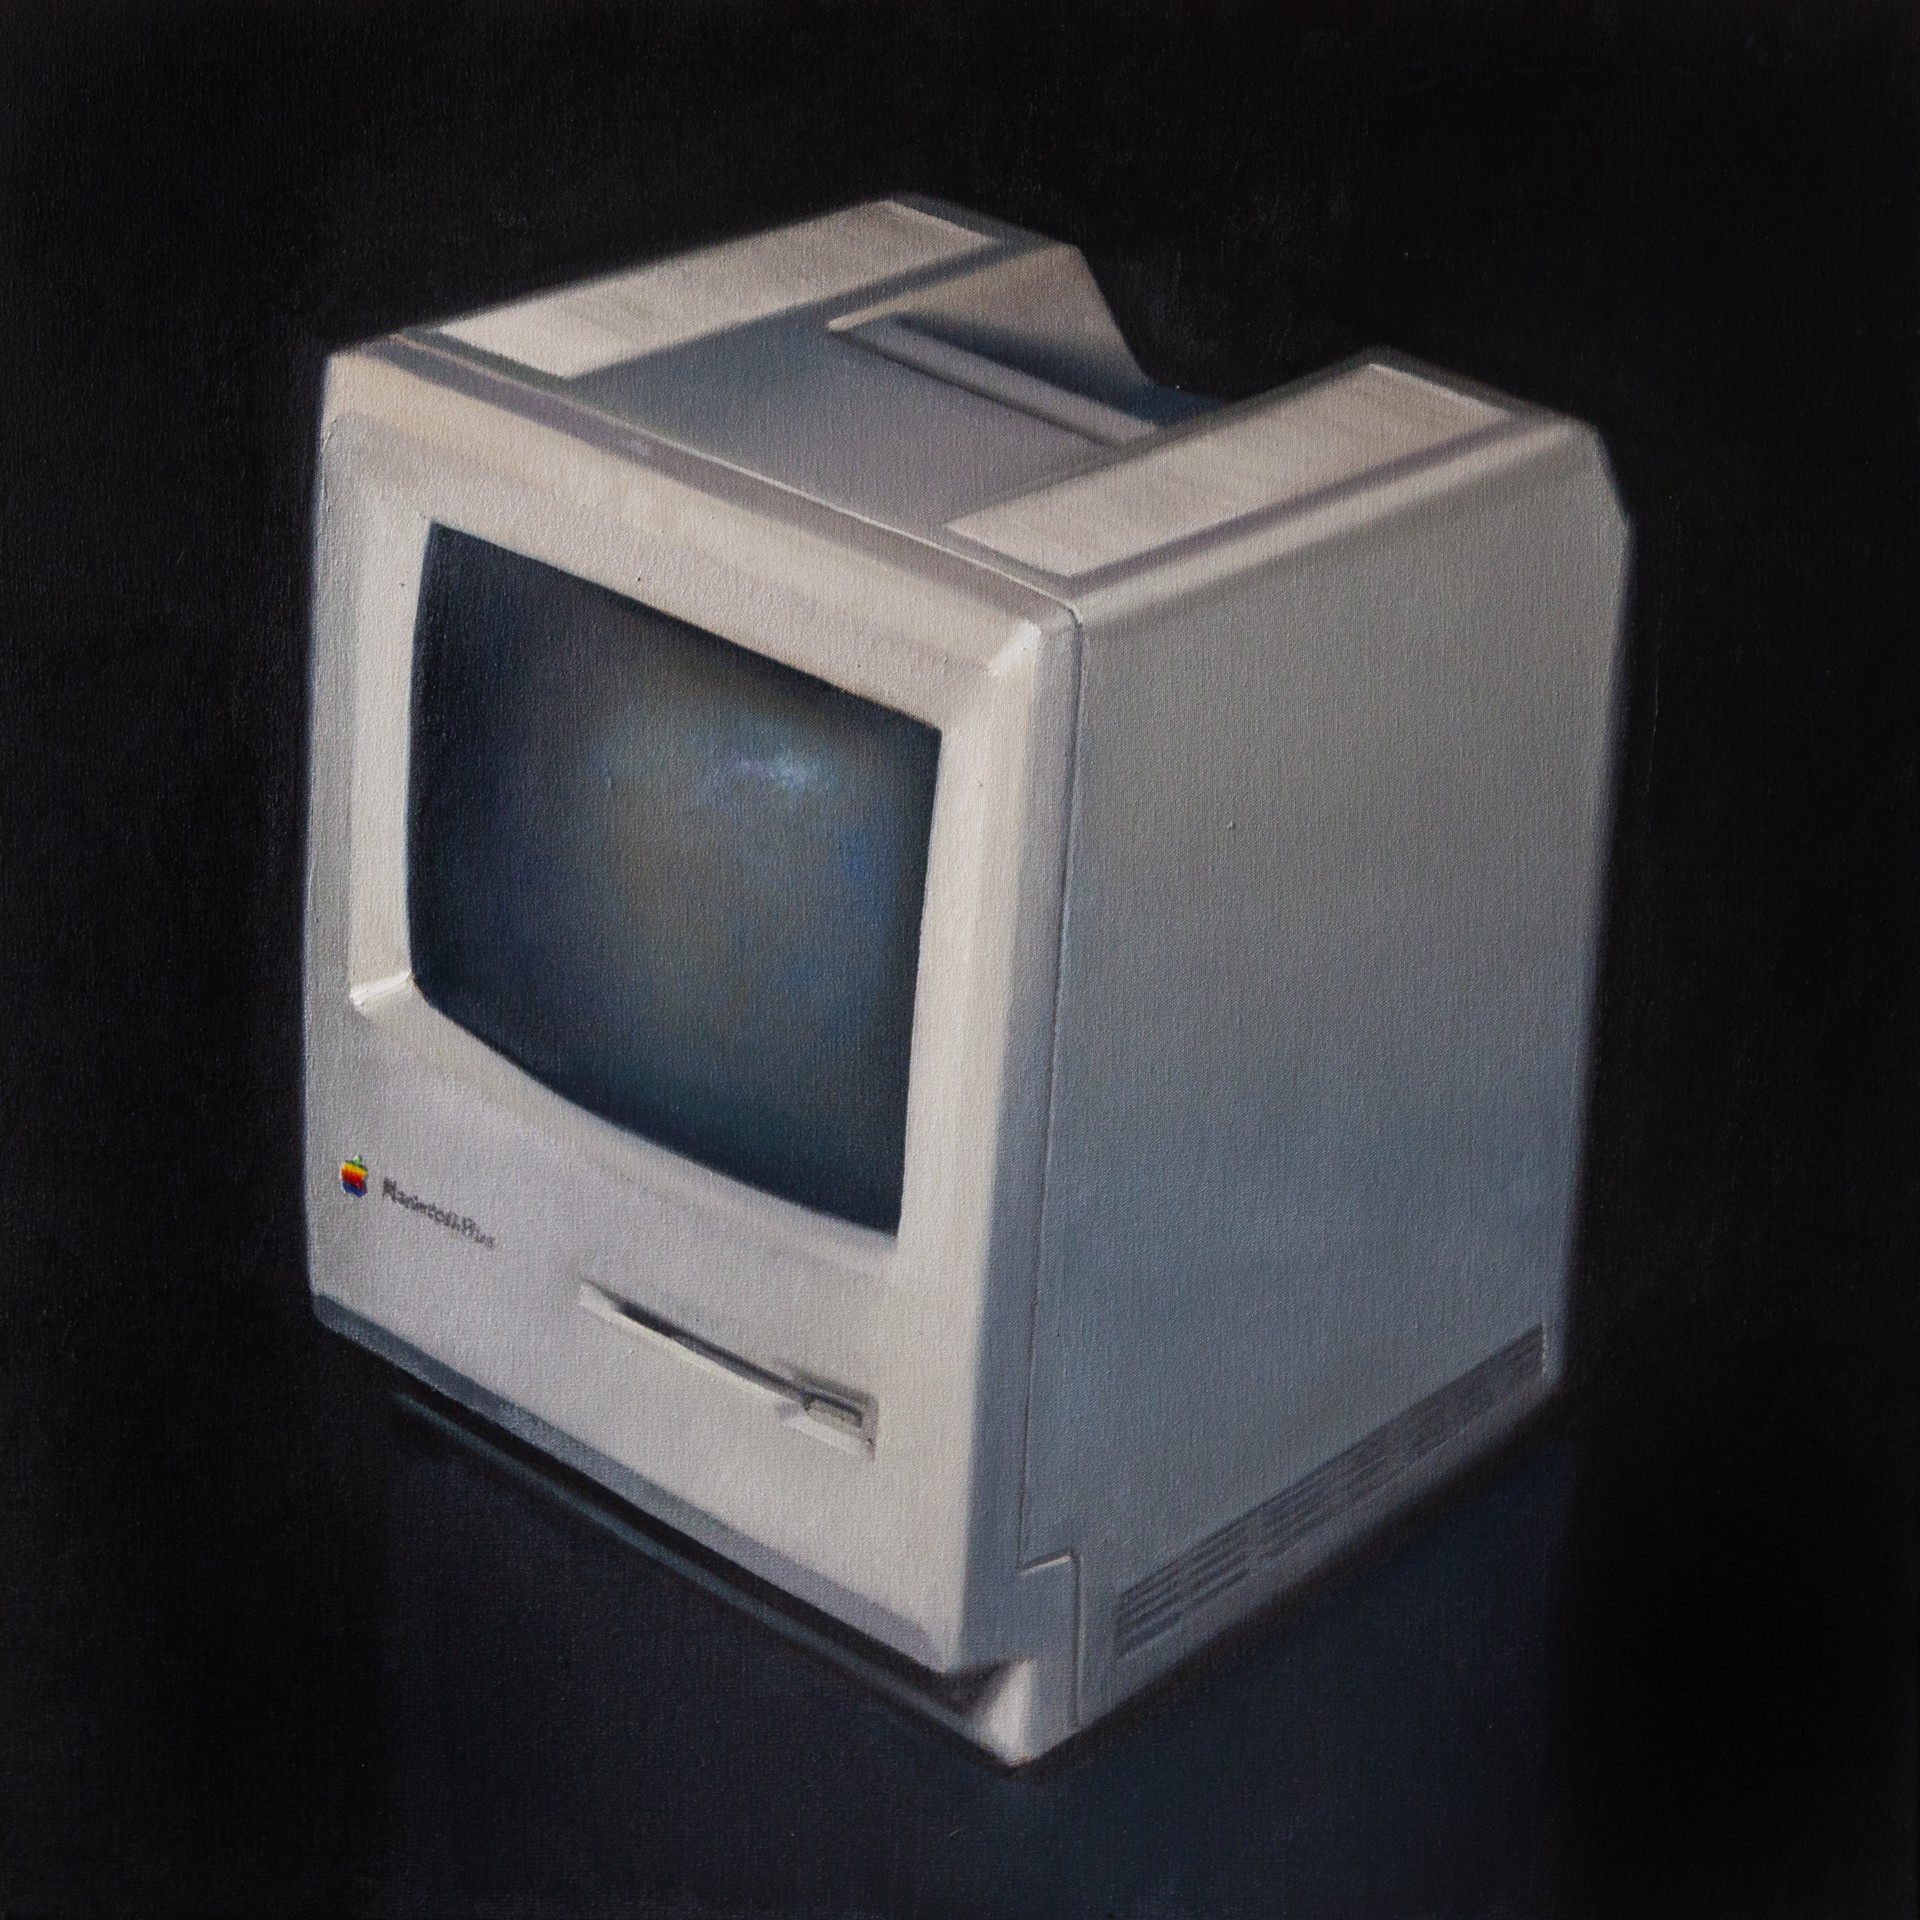 Macintosh by James Zamora